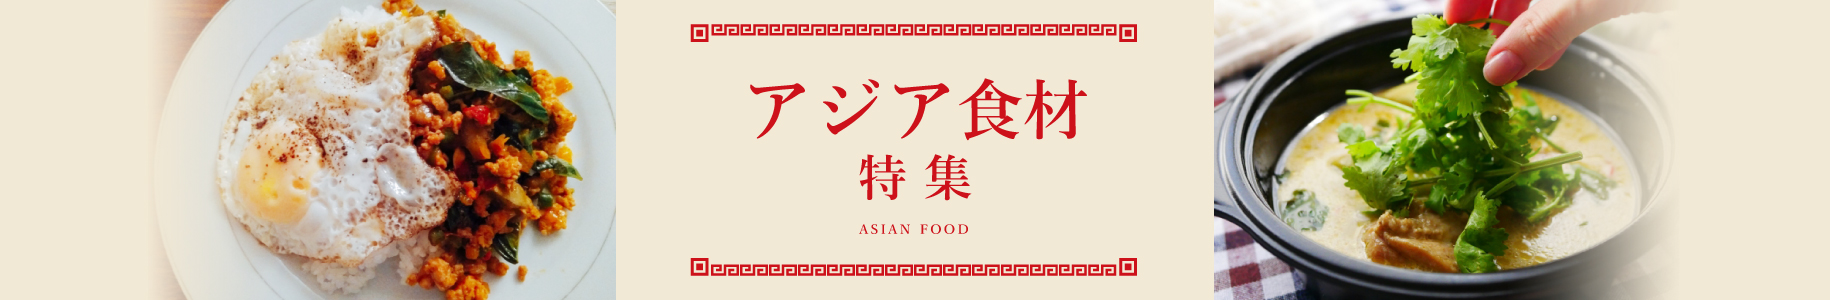 アジア食材特集